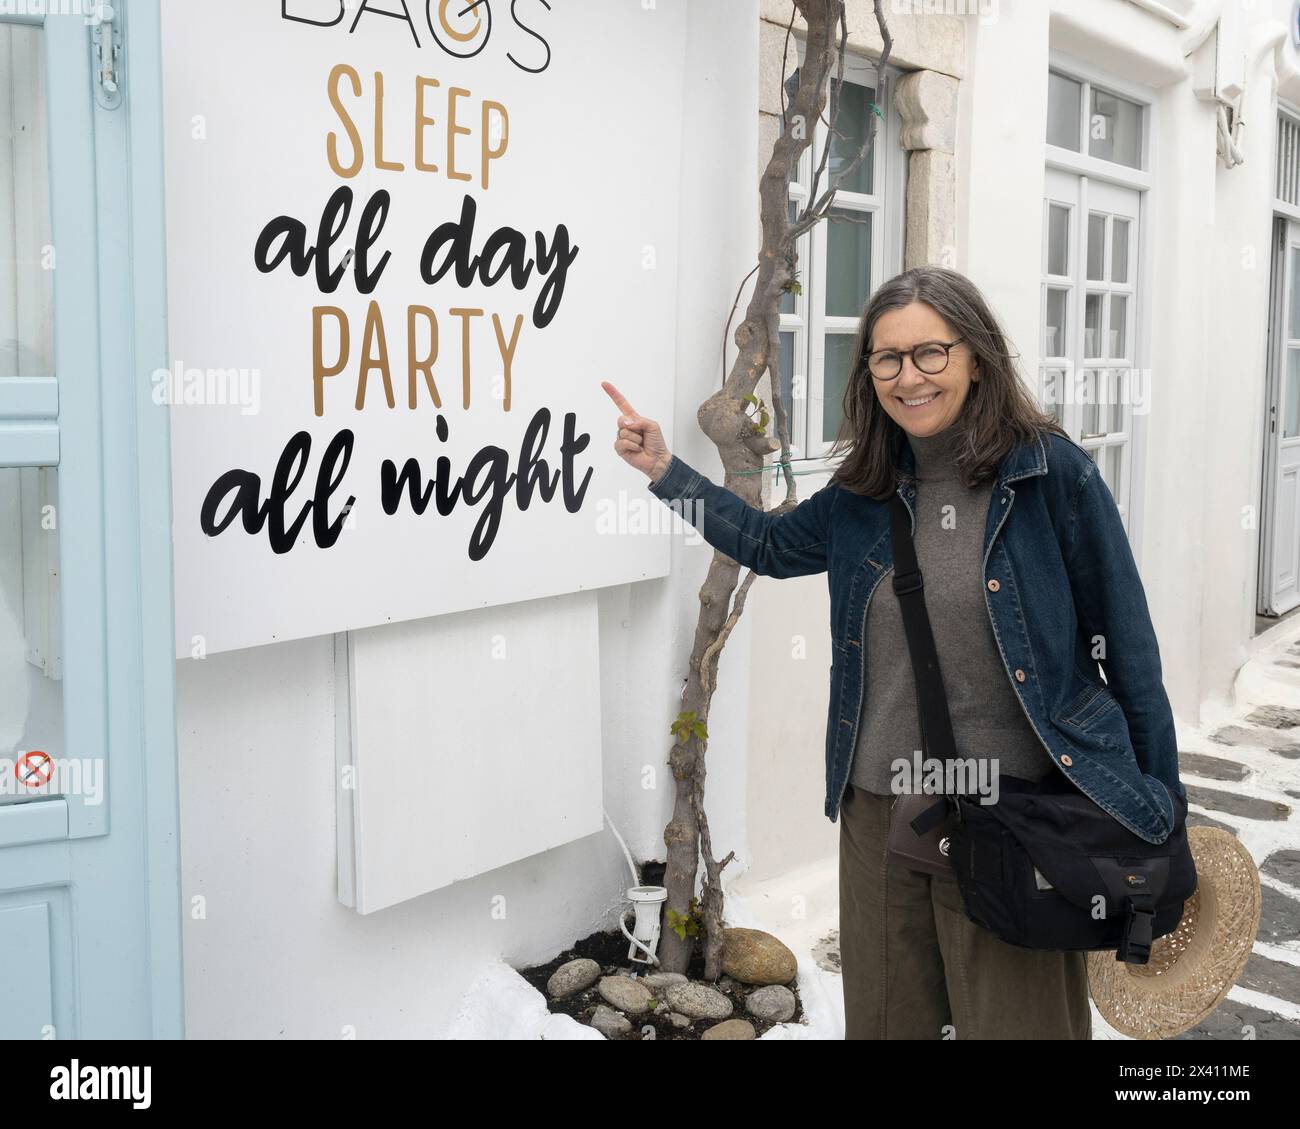 La donna matura si fa notare e ride di un cartello giovane e spensierato che dice "dormi tutto il giorno, festa tutta la notte", scritto sul bianco di un edificio... Foto Stock